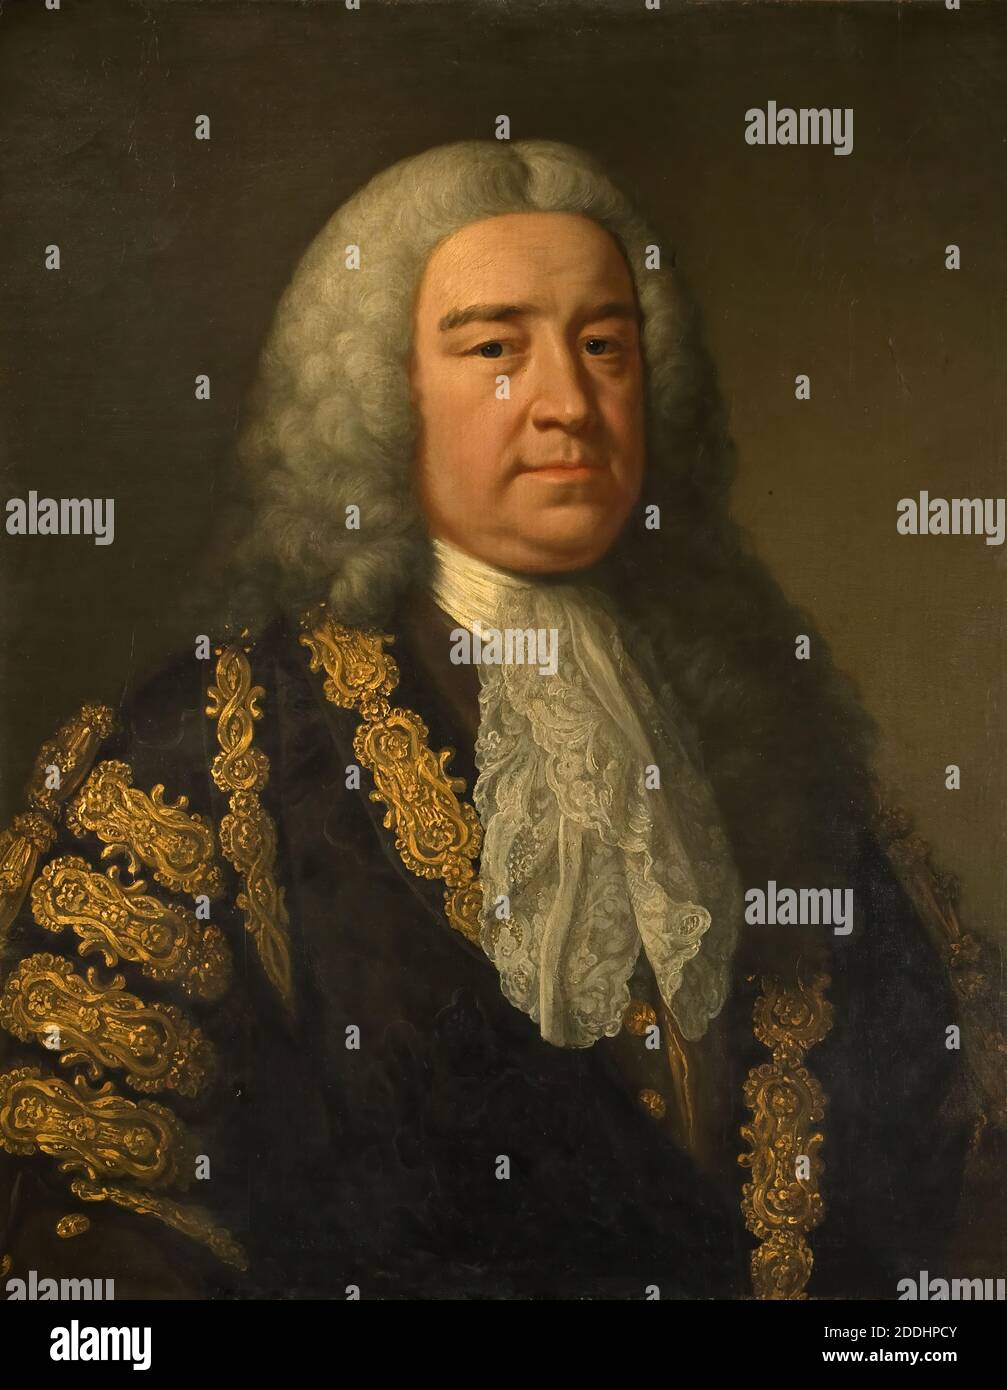 Porträt der RT. Hon. Henry Pelham ( 1694-1754) John Shackleton, Henry Pelham FRS (1694-1754) war ein britischer Whig-Staatsmann, der vom 27. August 1743 bis zu seinem Tod als Premierminister von Großbritannien diente. Pelham gilt allgemein als Großbritanniens dritter Premierminister nach Sir Robert Walpole und dem Earl of Wilmington., Ölgemälde, Porträt, Textilien, Spitze, Kostüm, Perücke Stockfoto